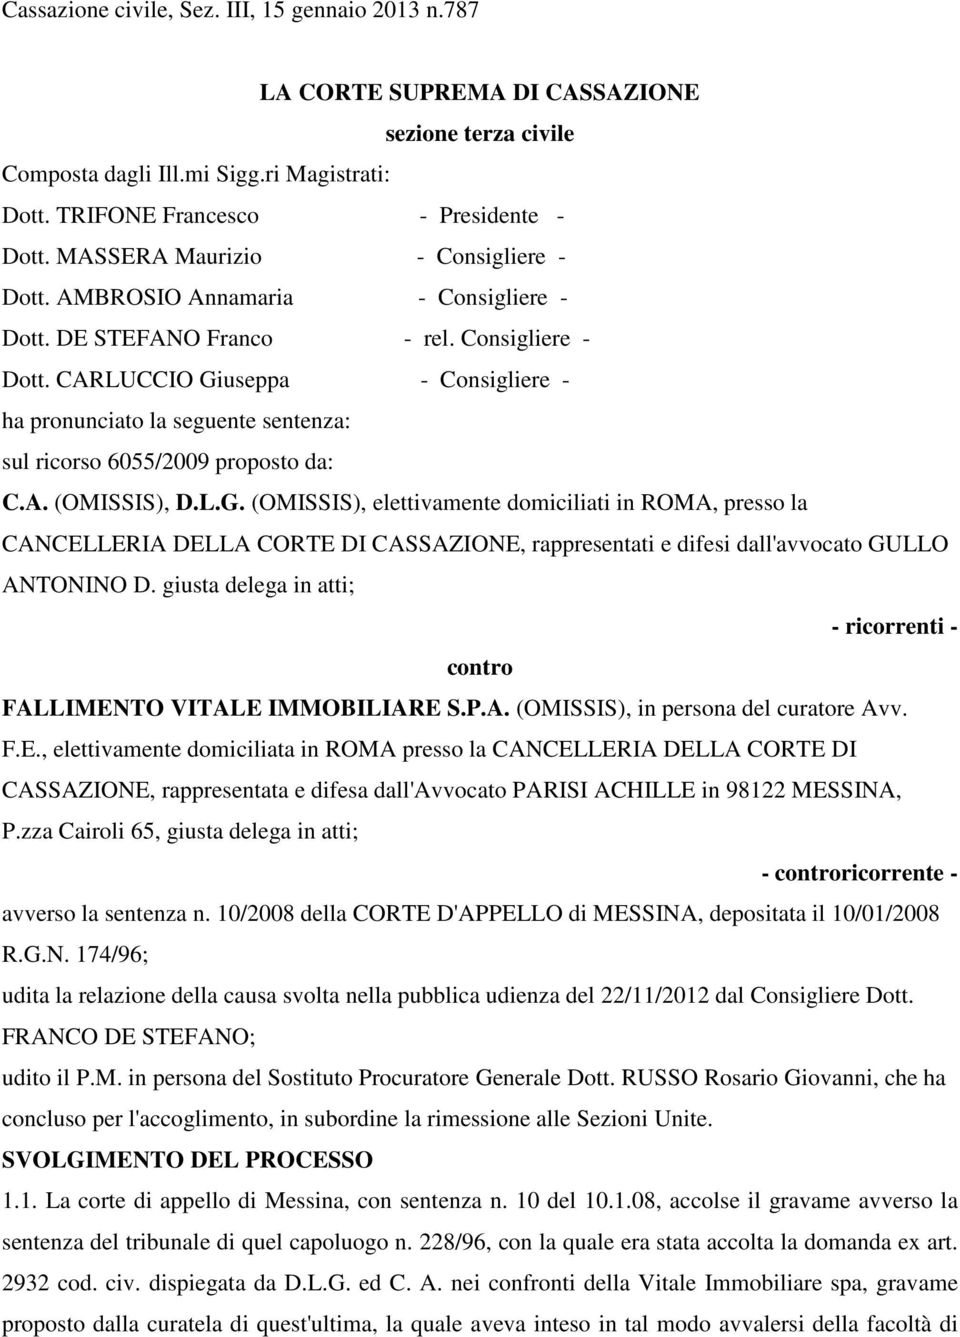 A. (OMISSIS), D.L.G. (OMISSIS), elettivamente domiciliati in ROMA, presso la CANCELLERIA DELLA CORTE DI CASSAZIONE, rappresentati e difesi dall'avvocato GULLO ANTONINO D.